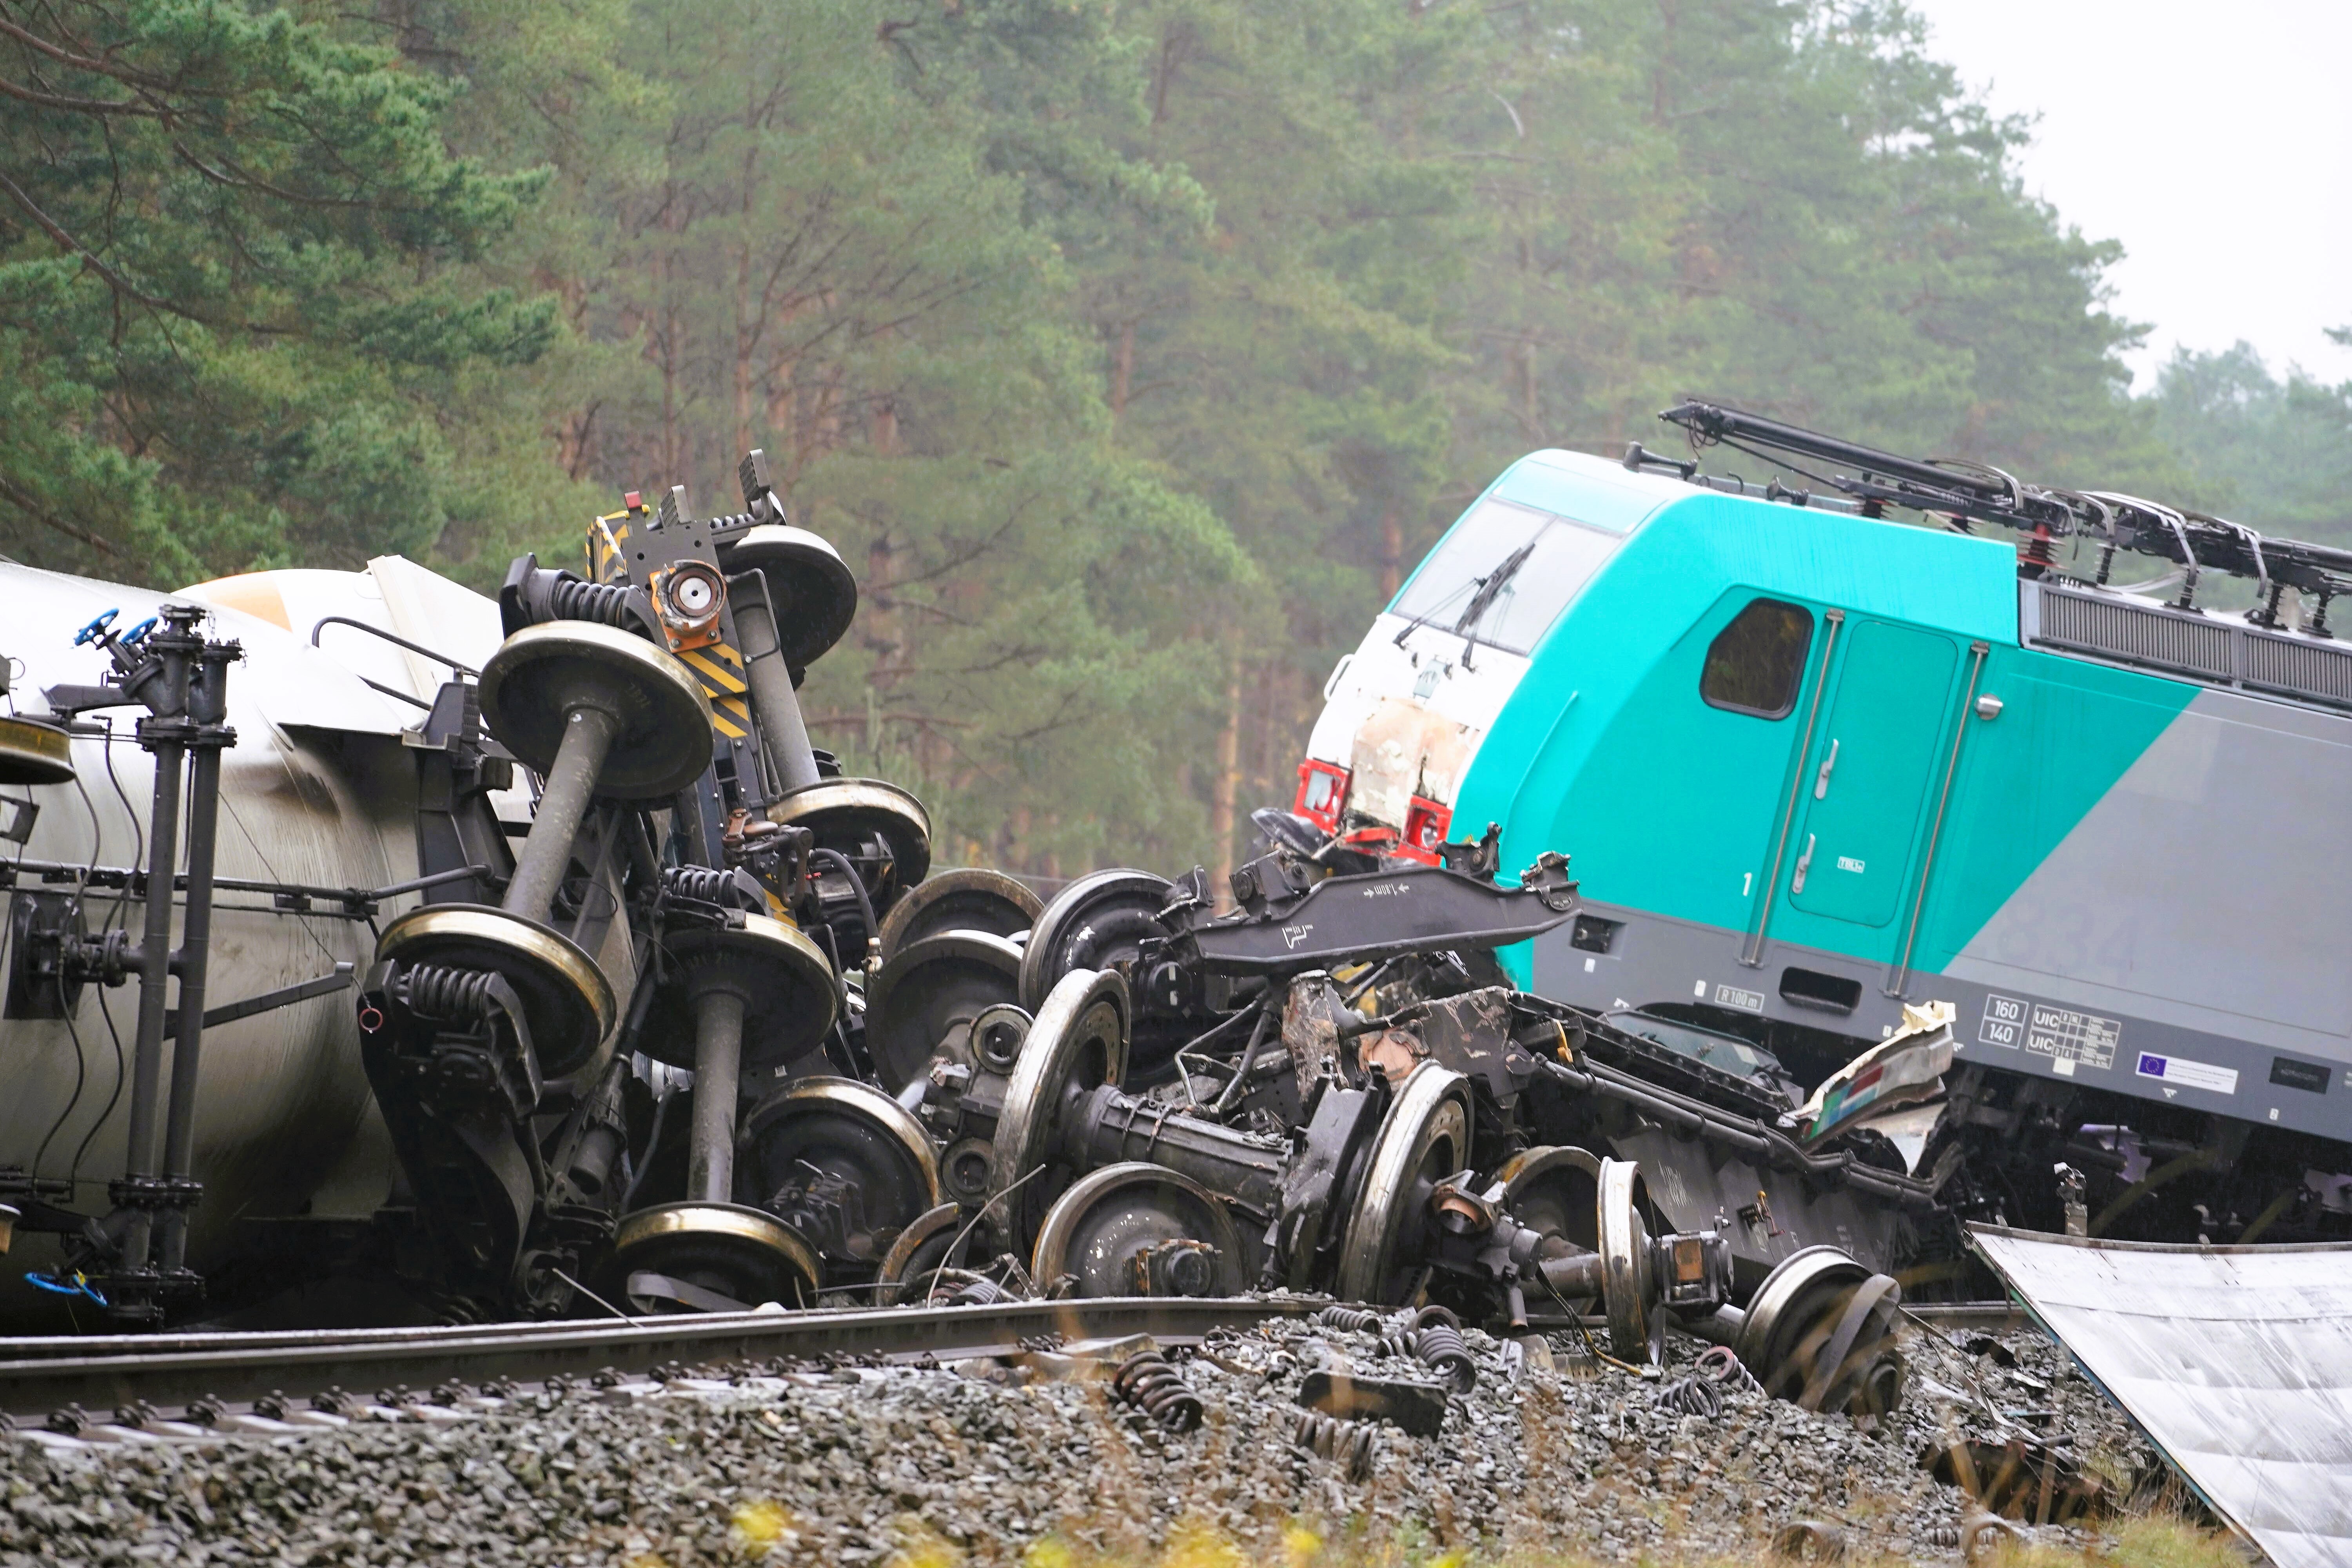 Eilmeldung! Züge zusammen gestoßen! 4 Menschen tot, mehrere Verletzte!